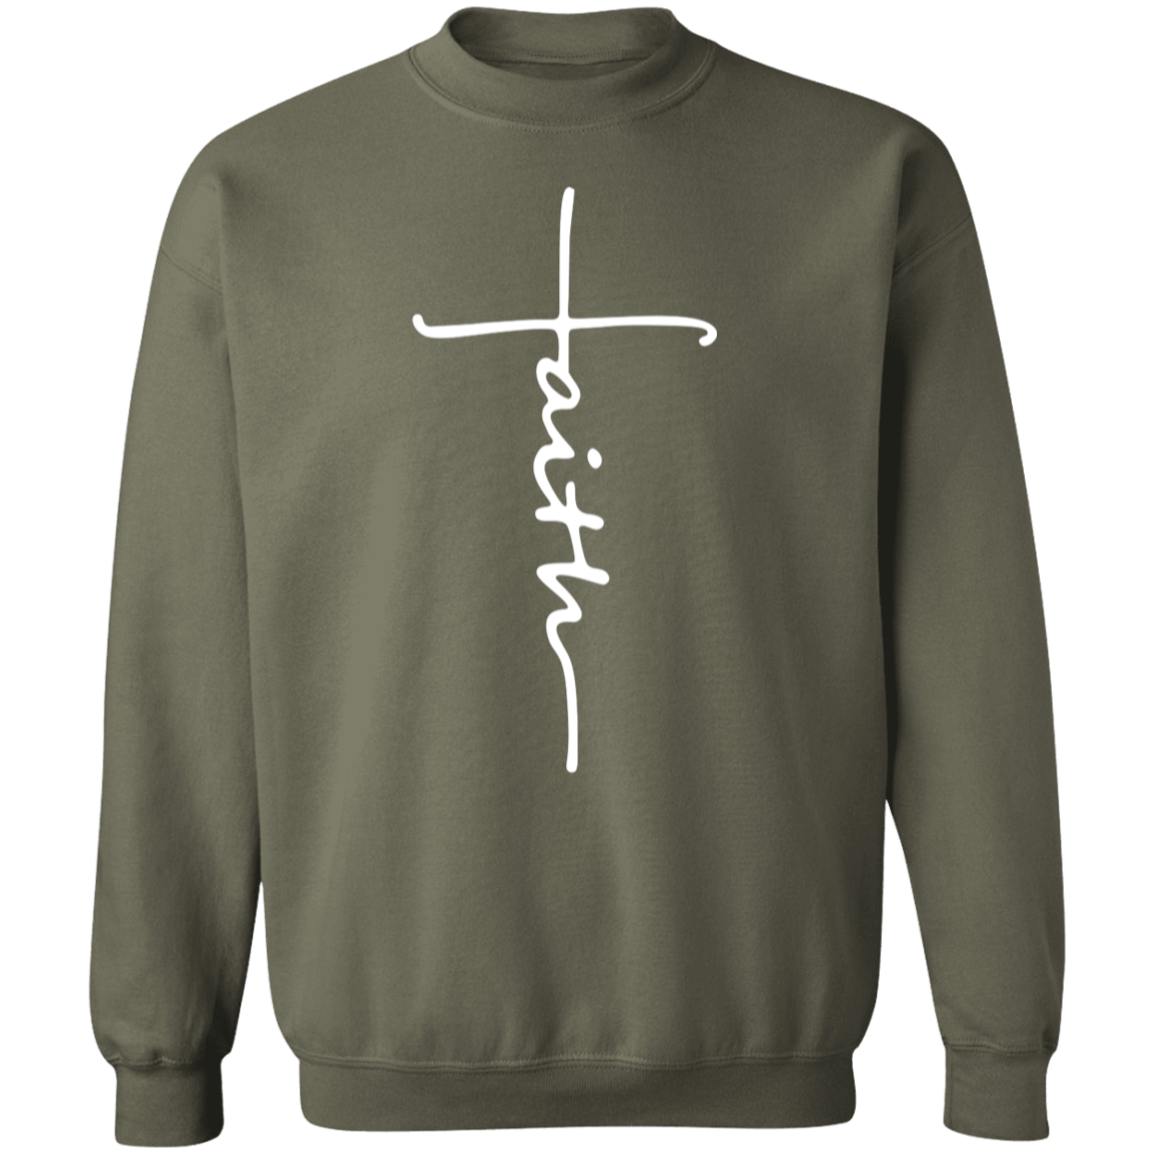 Faith Sweatshirt, Faith Cross Shirt, Christian Gift, Faith Gift, Christian Shirt, Love and Grace Shirt, Believe Shirt, Vertical Cross